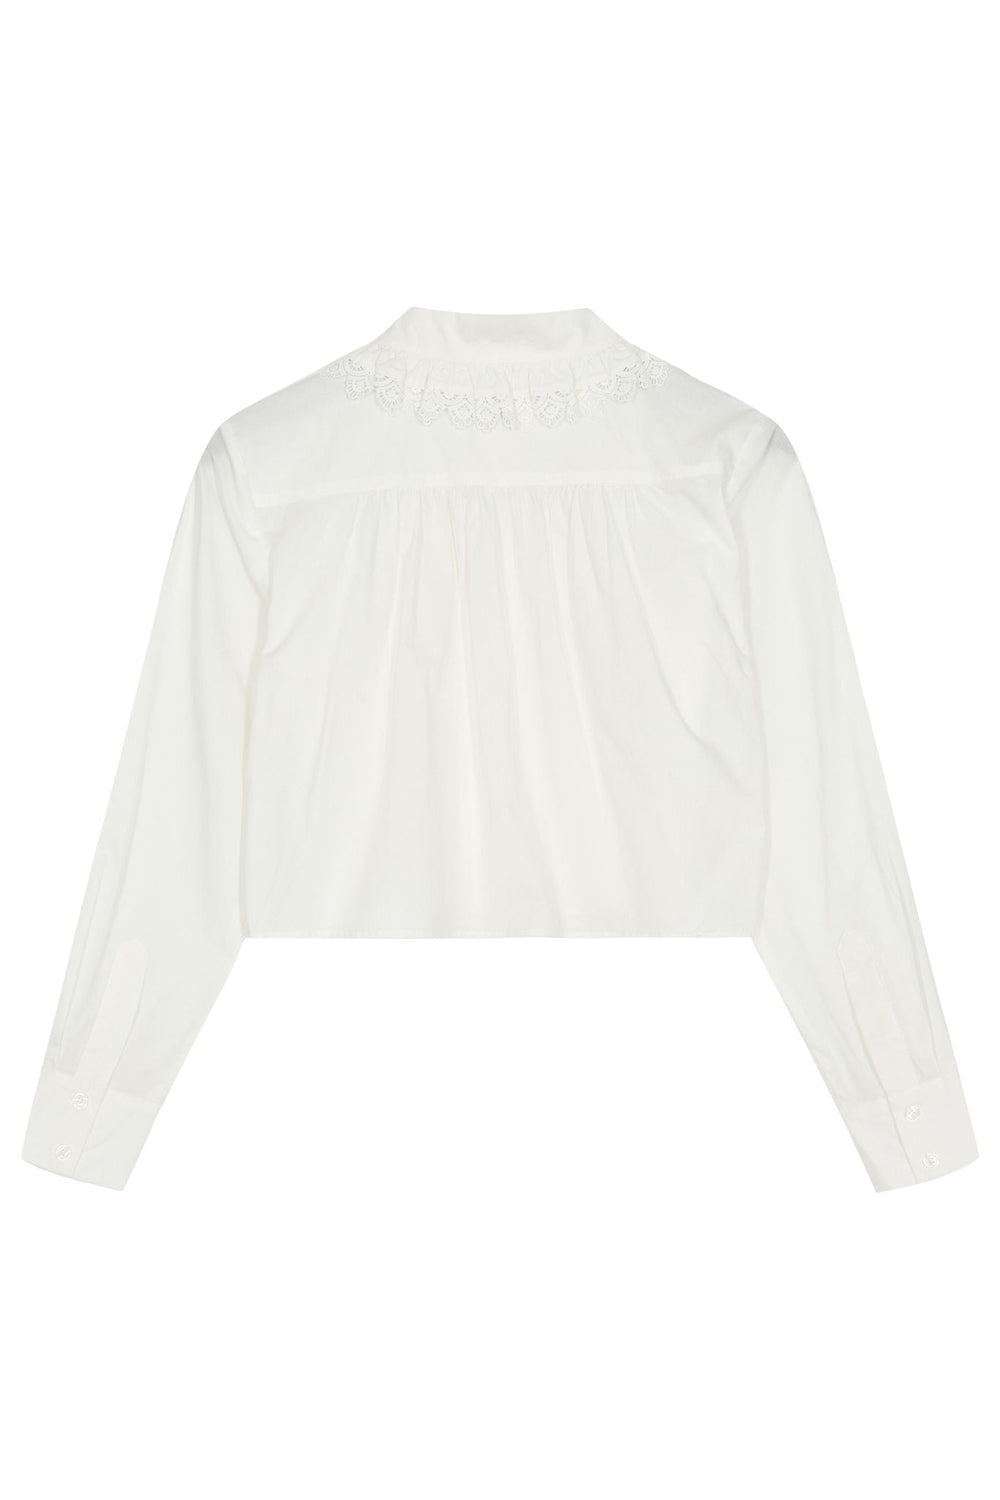 Sandrine Boxy Shirt - Cream 001 - Posh New York